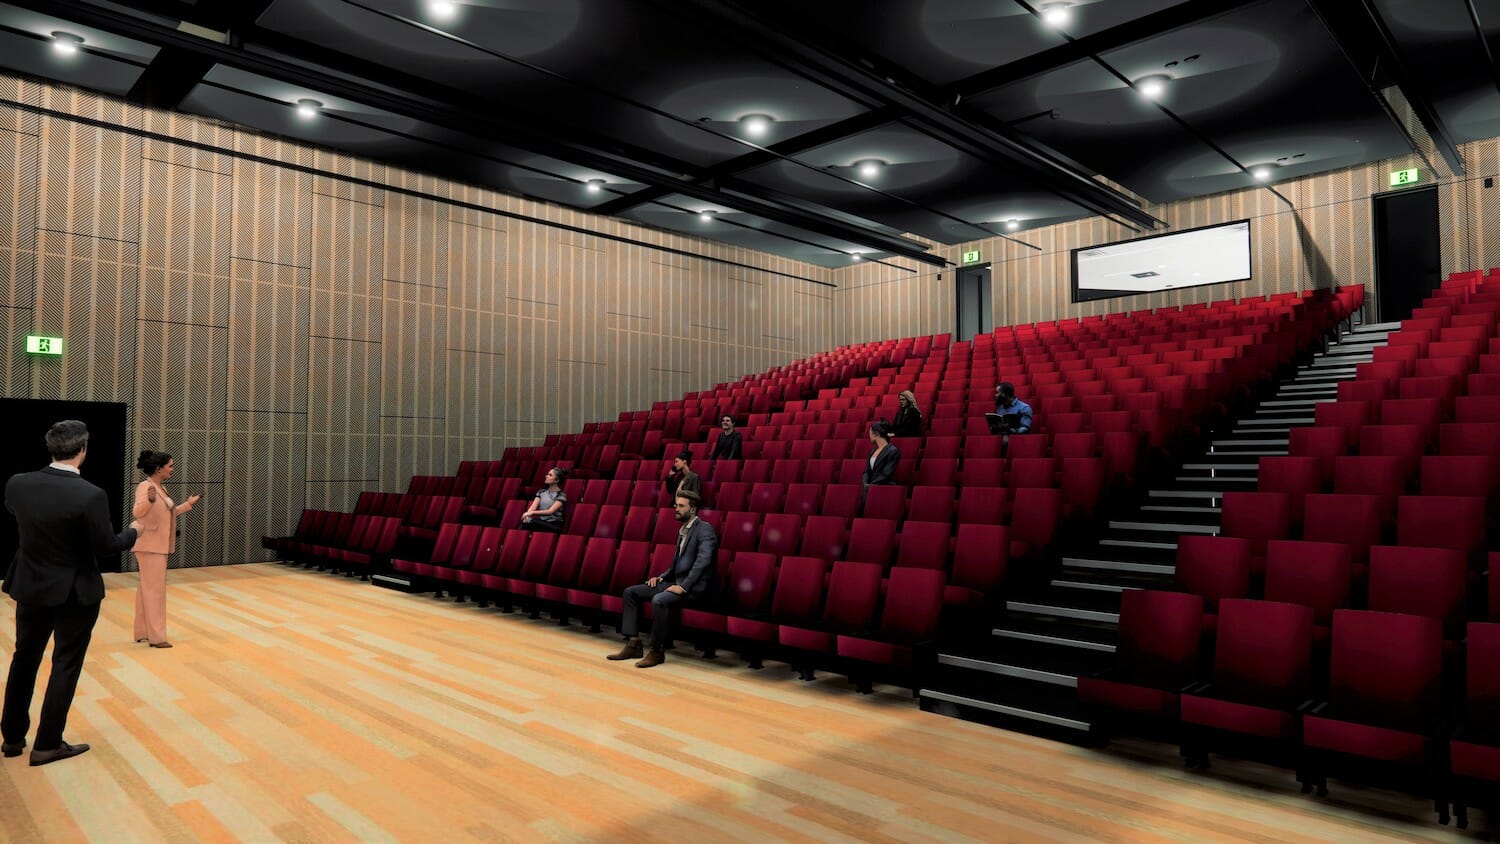 Cinema Design for Clutha Community Hub